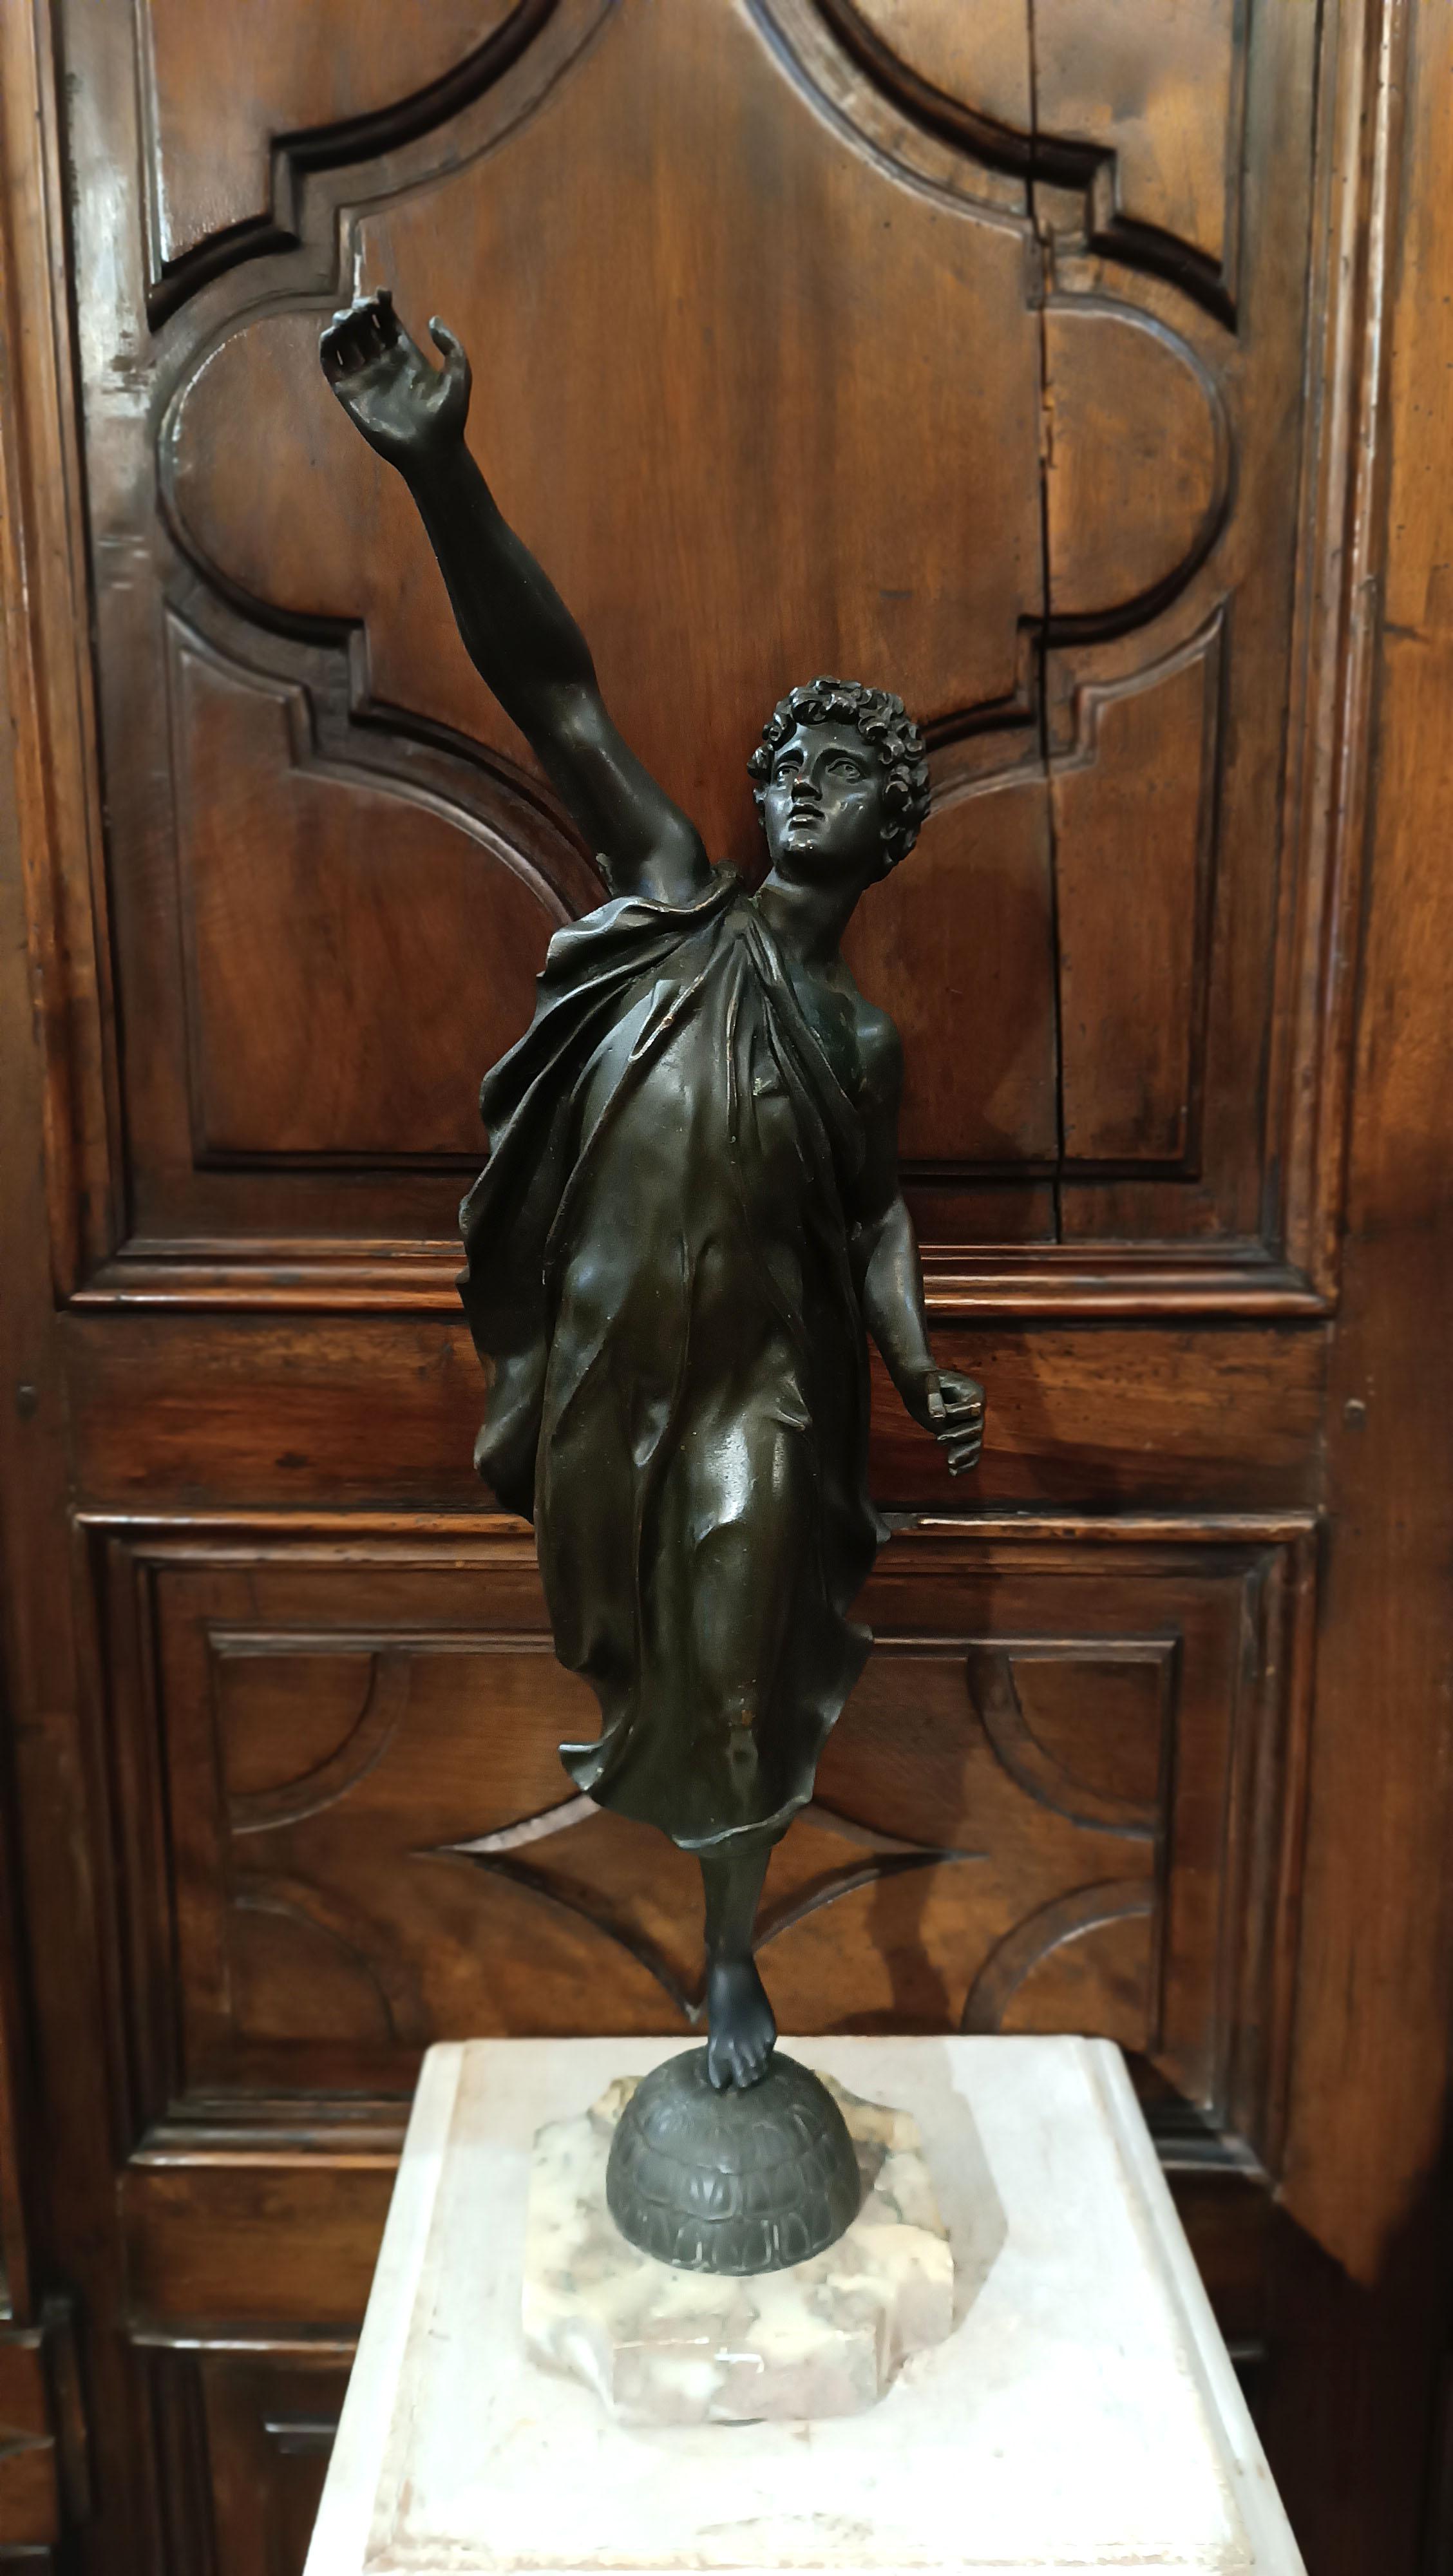 Élégantes statuettes en bronze coulées à la cire perdue, fabriquées en Italie au début du XIXe siècle. Les statuettes, un homme et une femme, ont des références classiques et représentent l'allégorie du printemps. En fait, tous deux sont sculptés